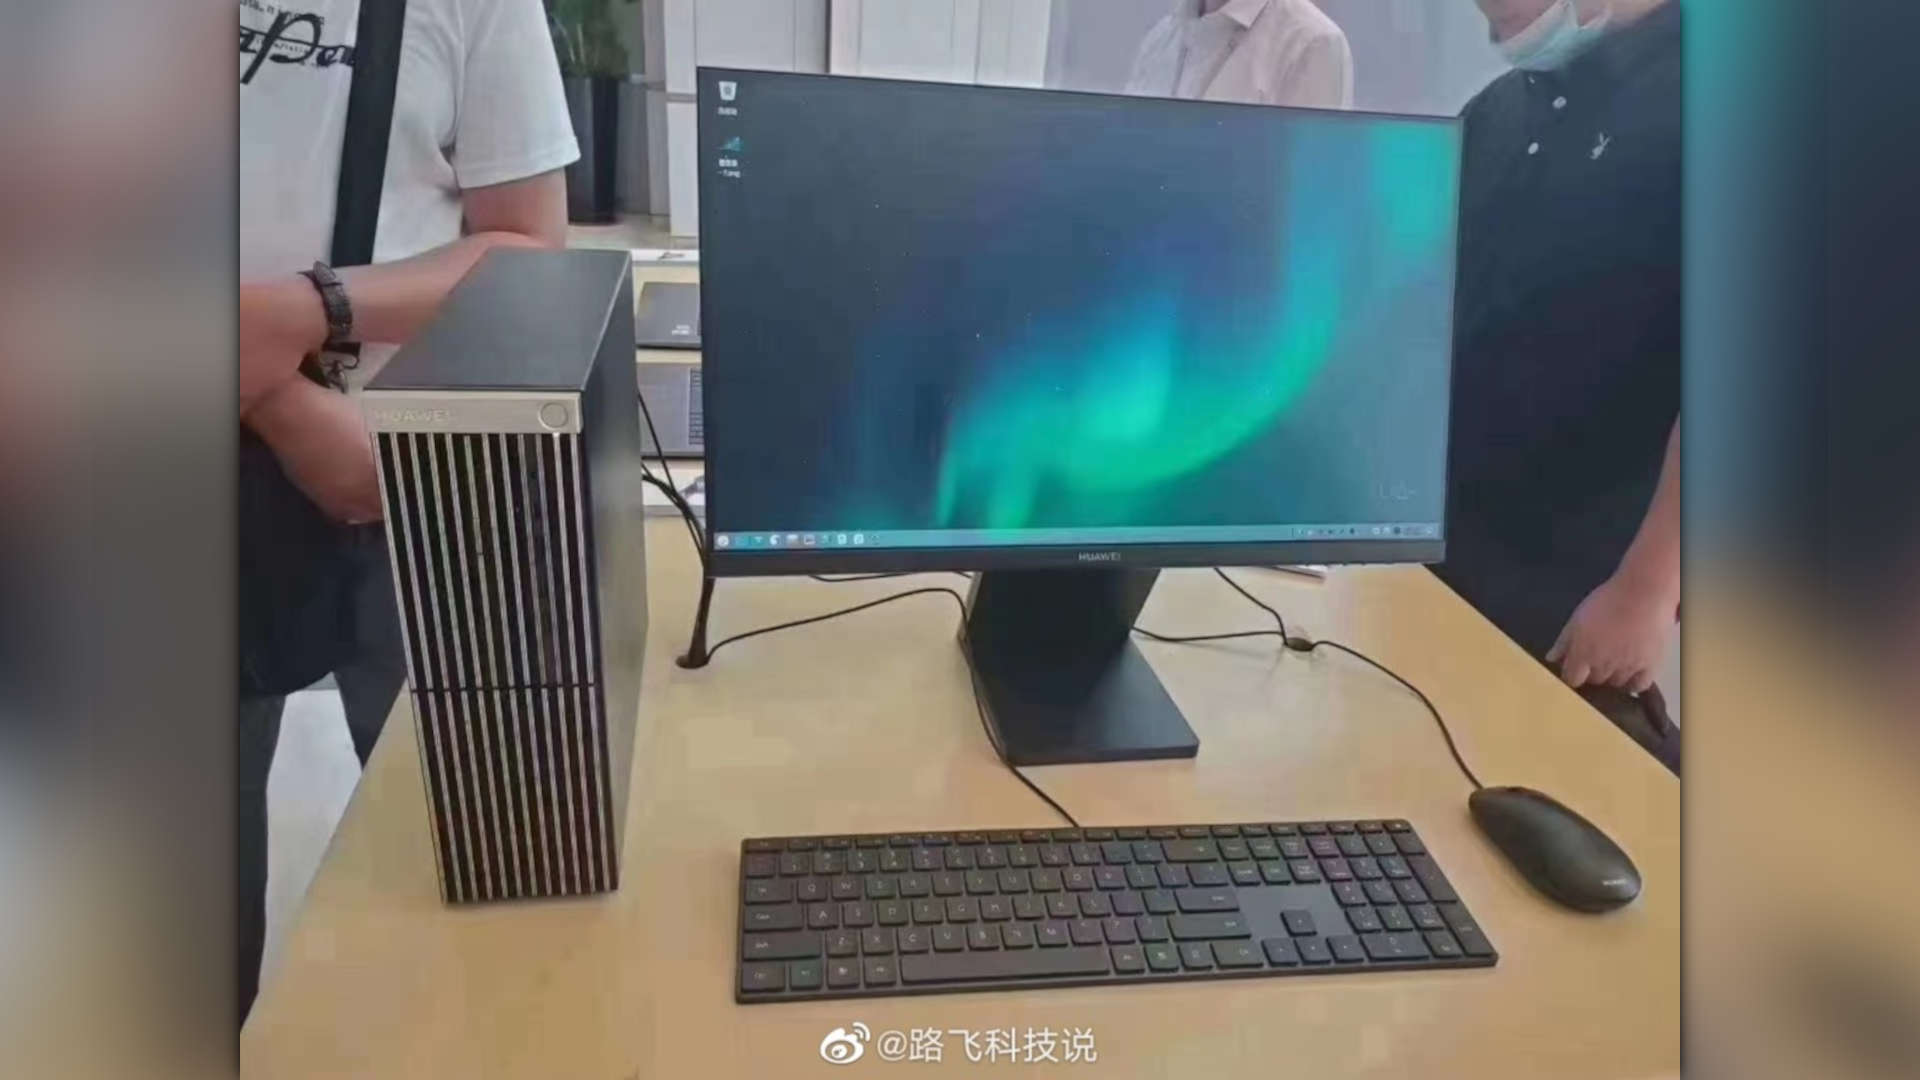 کامپیوتر هواوی Kunpeng